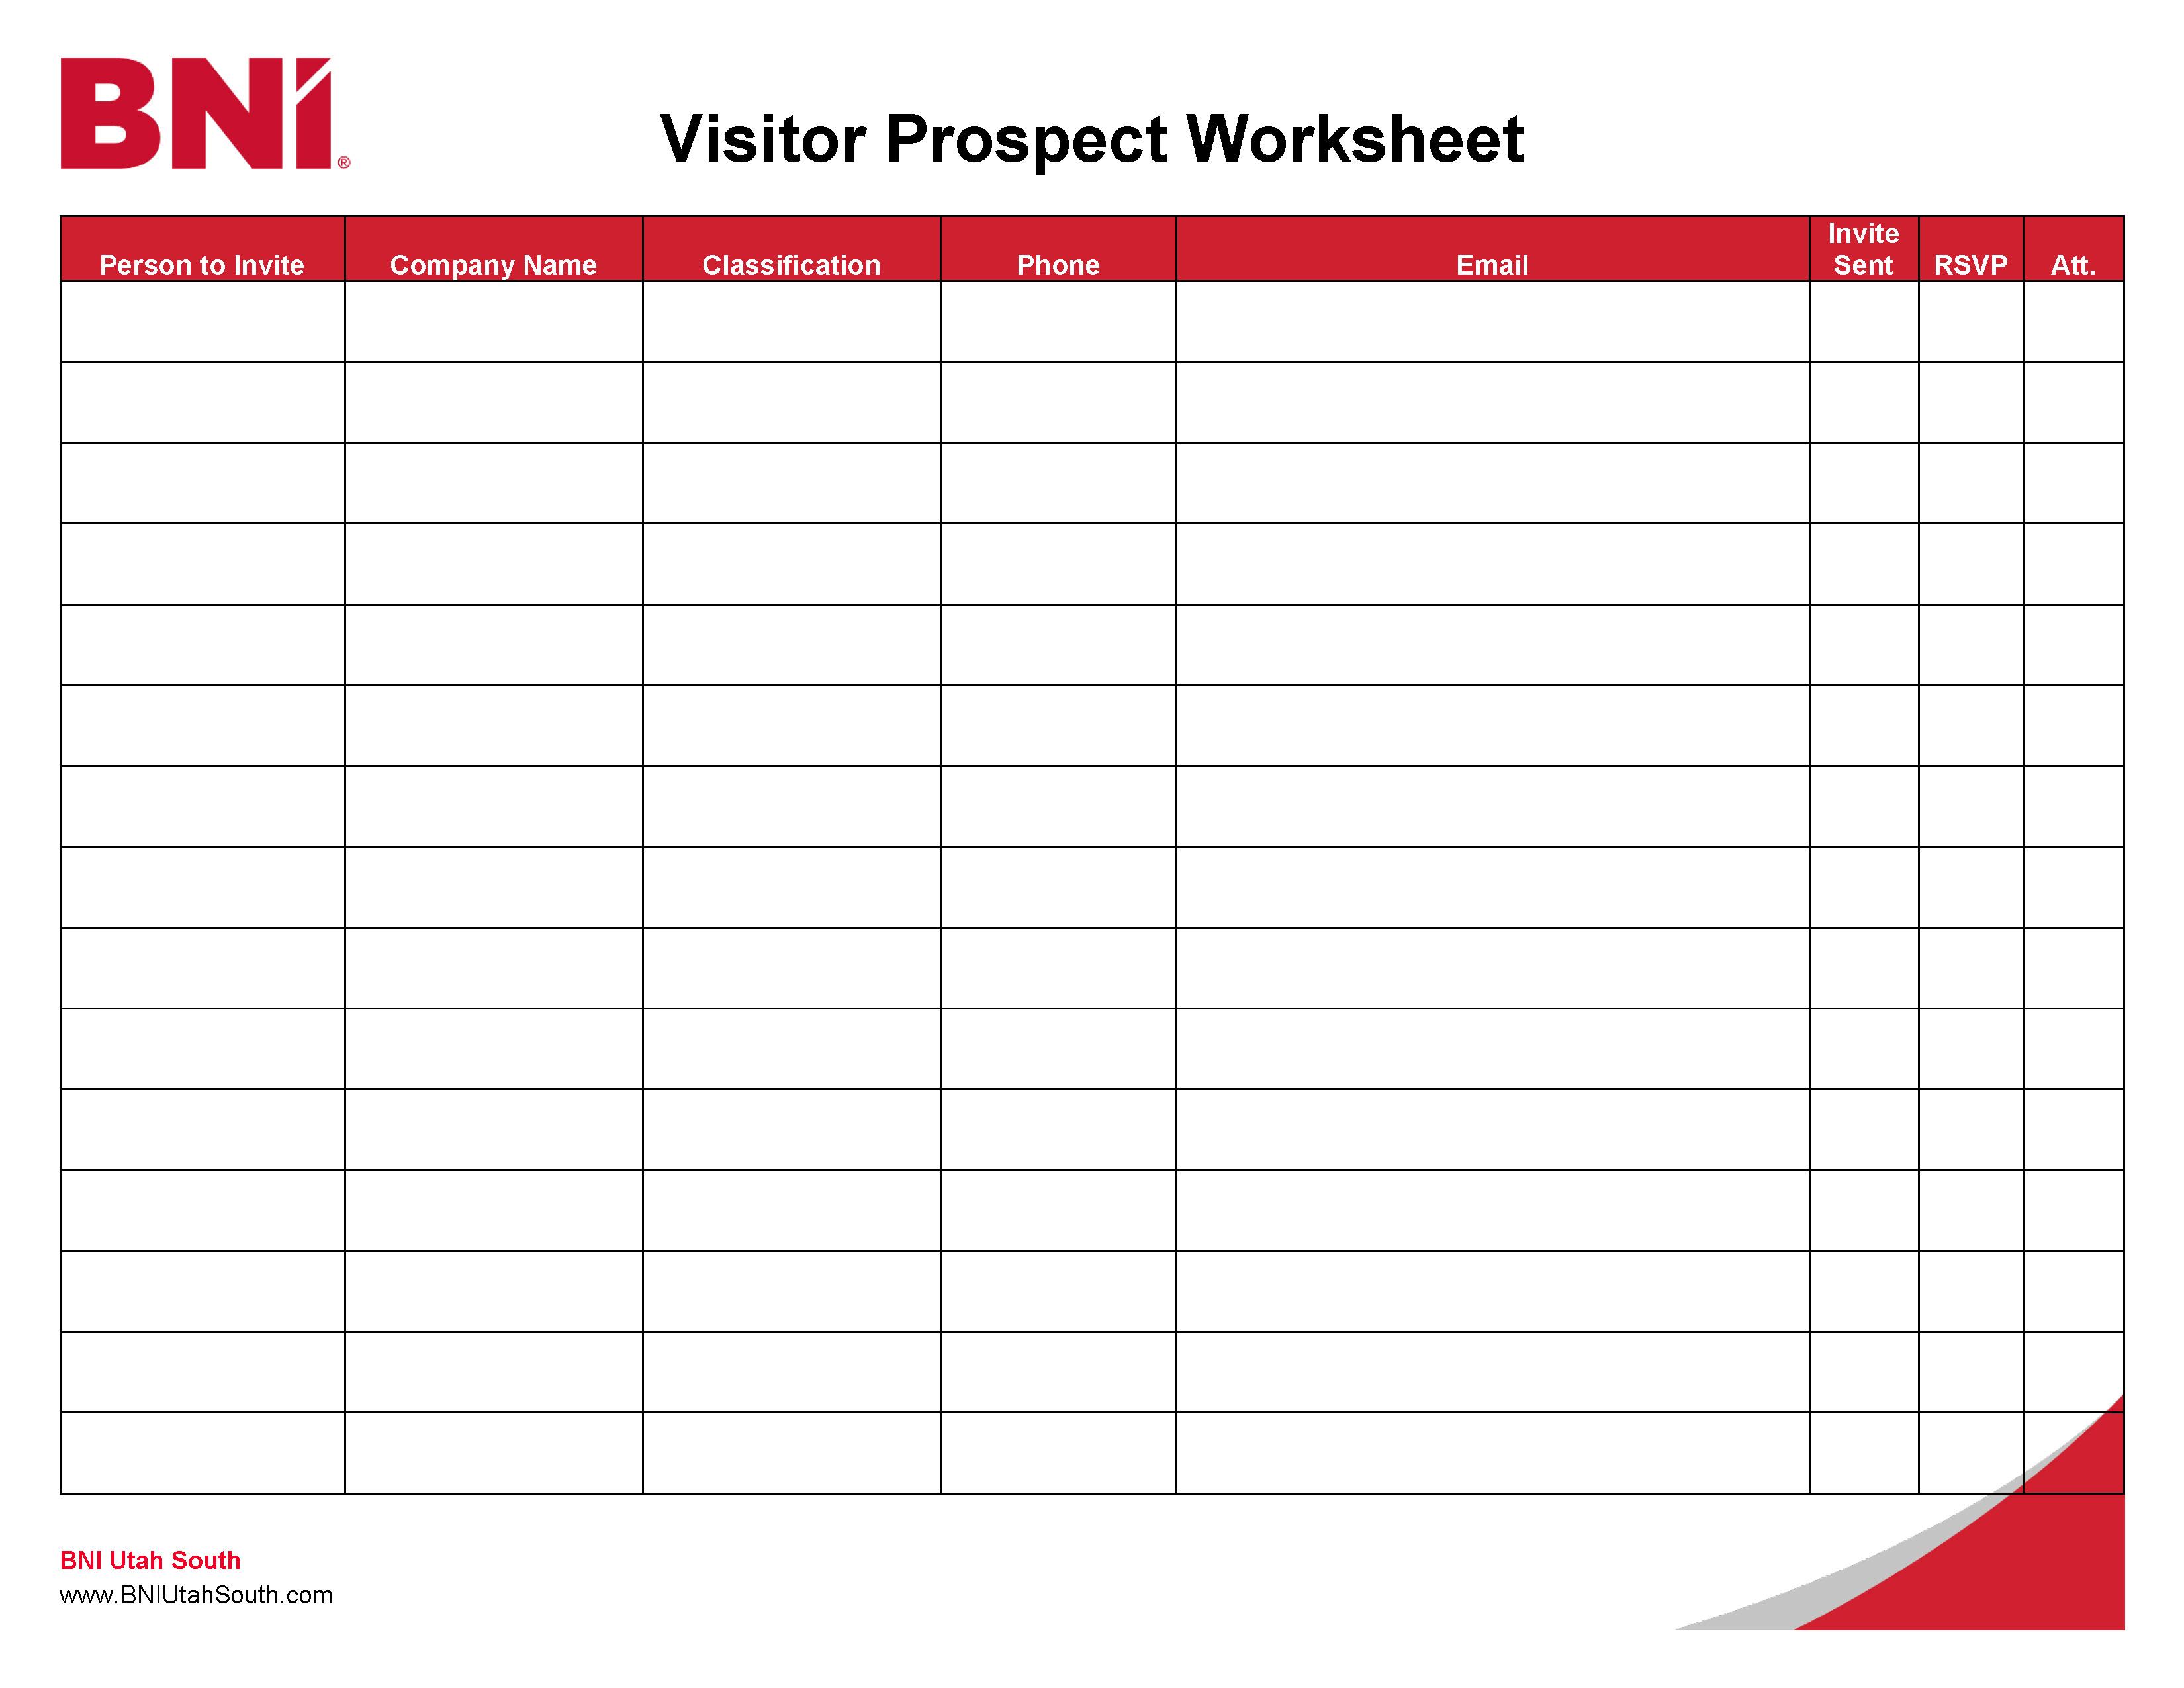 Download the Visitor Prospect Worksheet